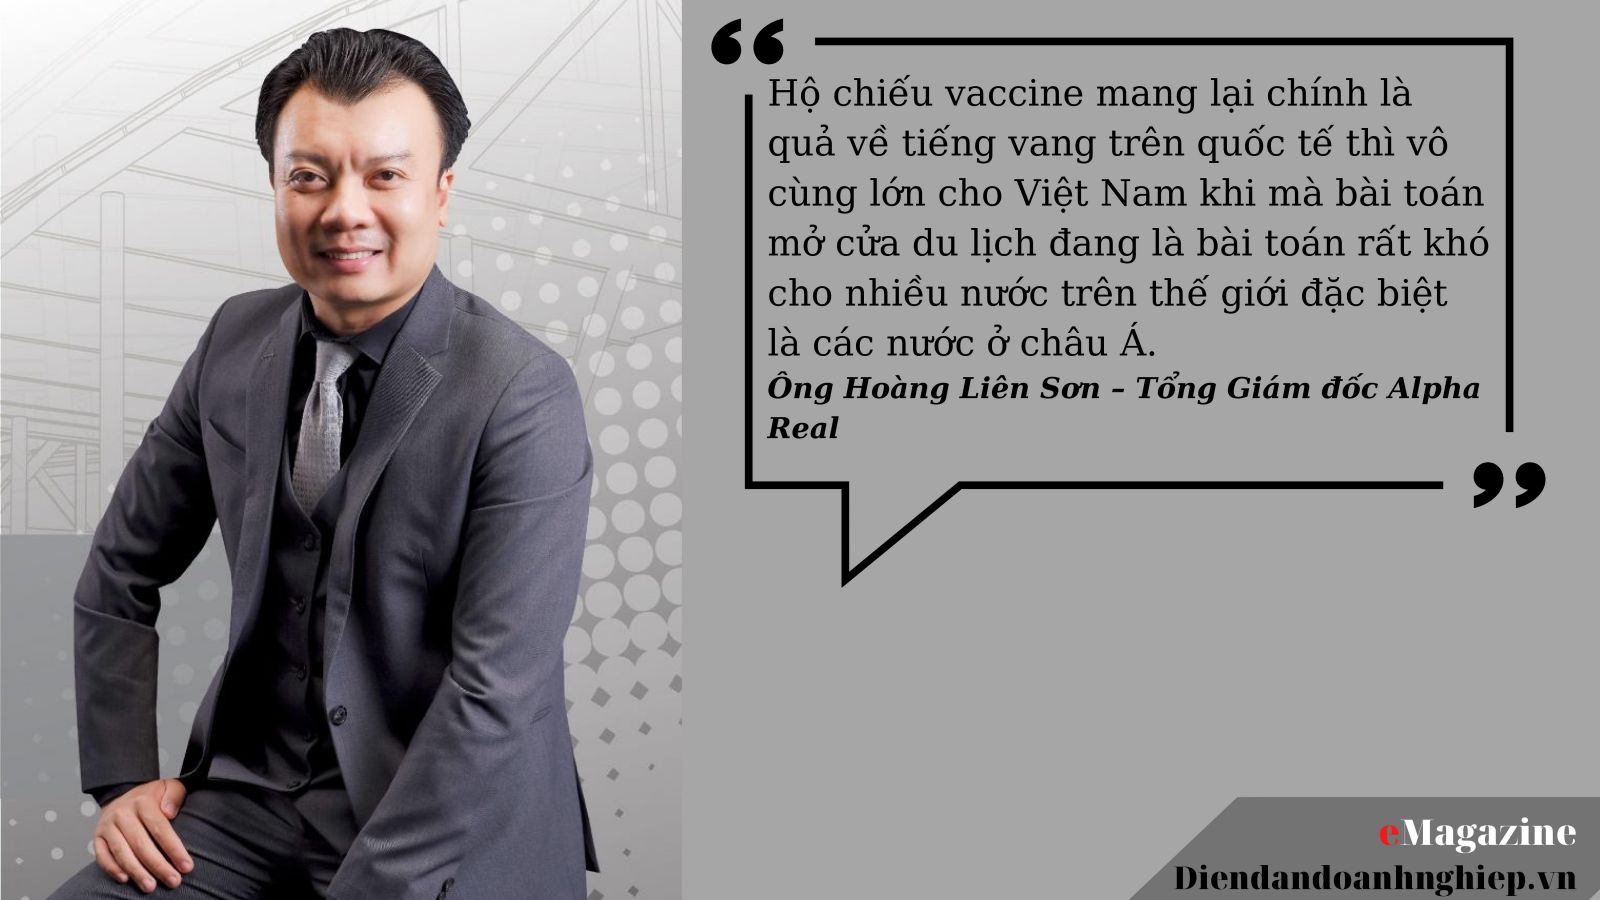 [eMagazine] Phú Quốc sẵn sàng áp dụng "hộ chiếu vaccine"